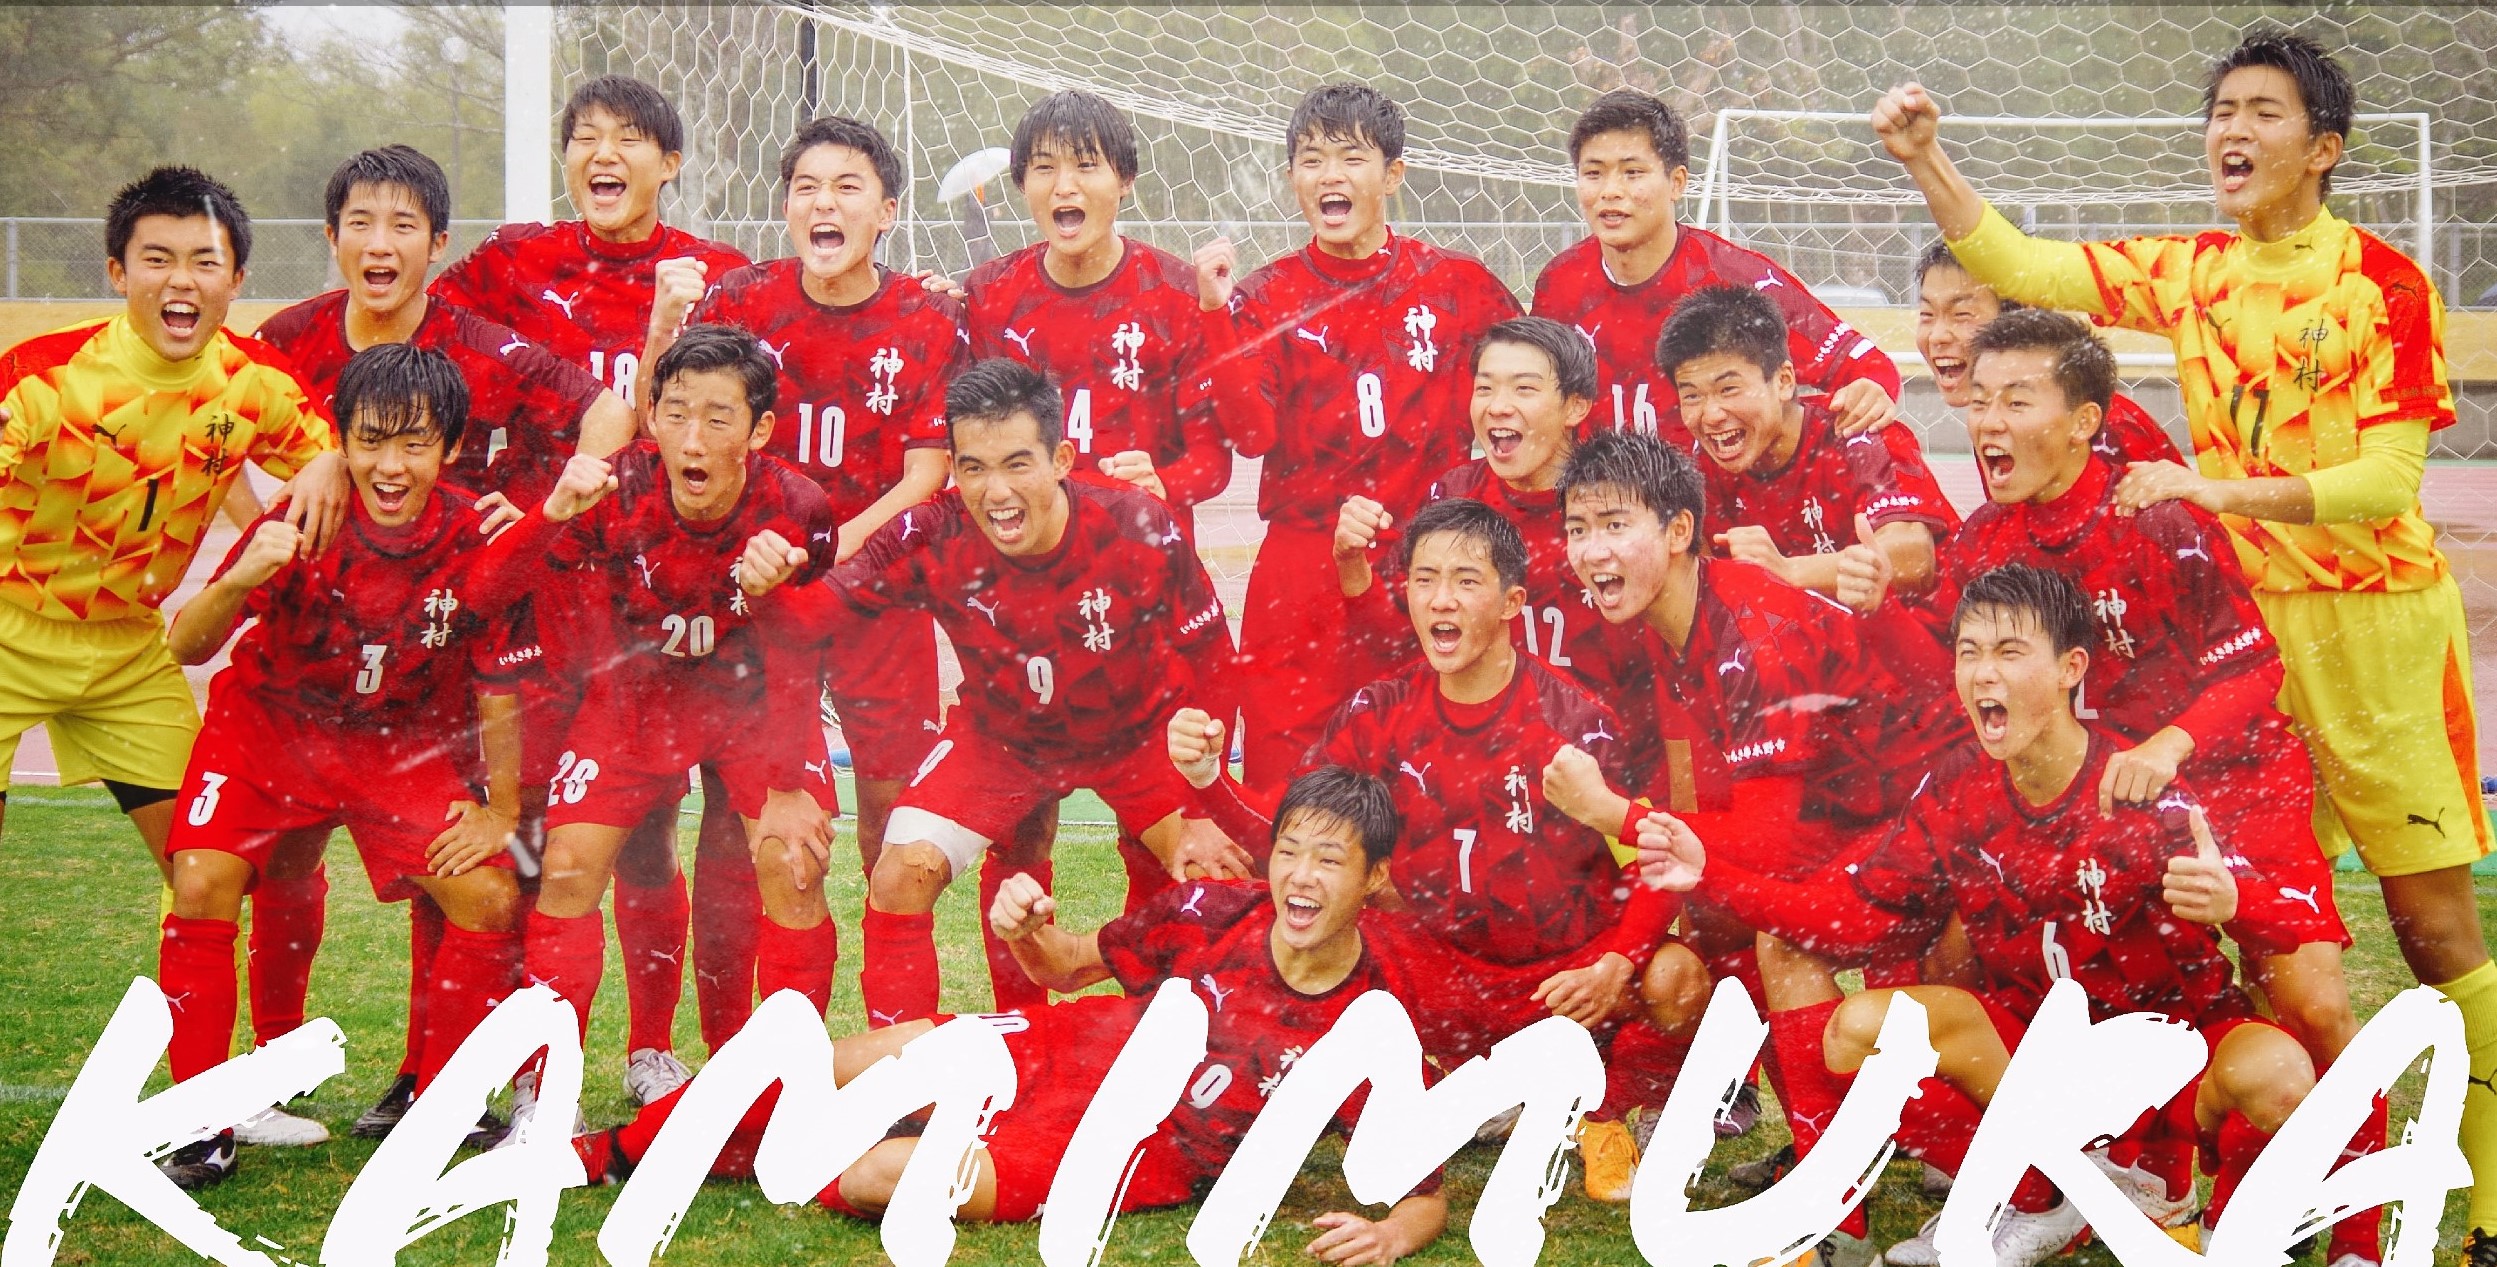 神村学園サッカー部 Official Site 神村学園高等部男子サッカー部の公式ウェブサイトです